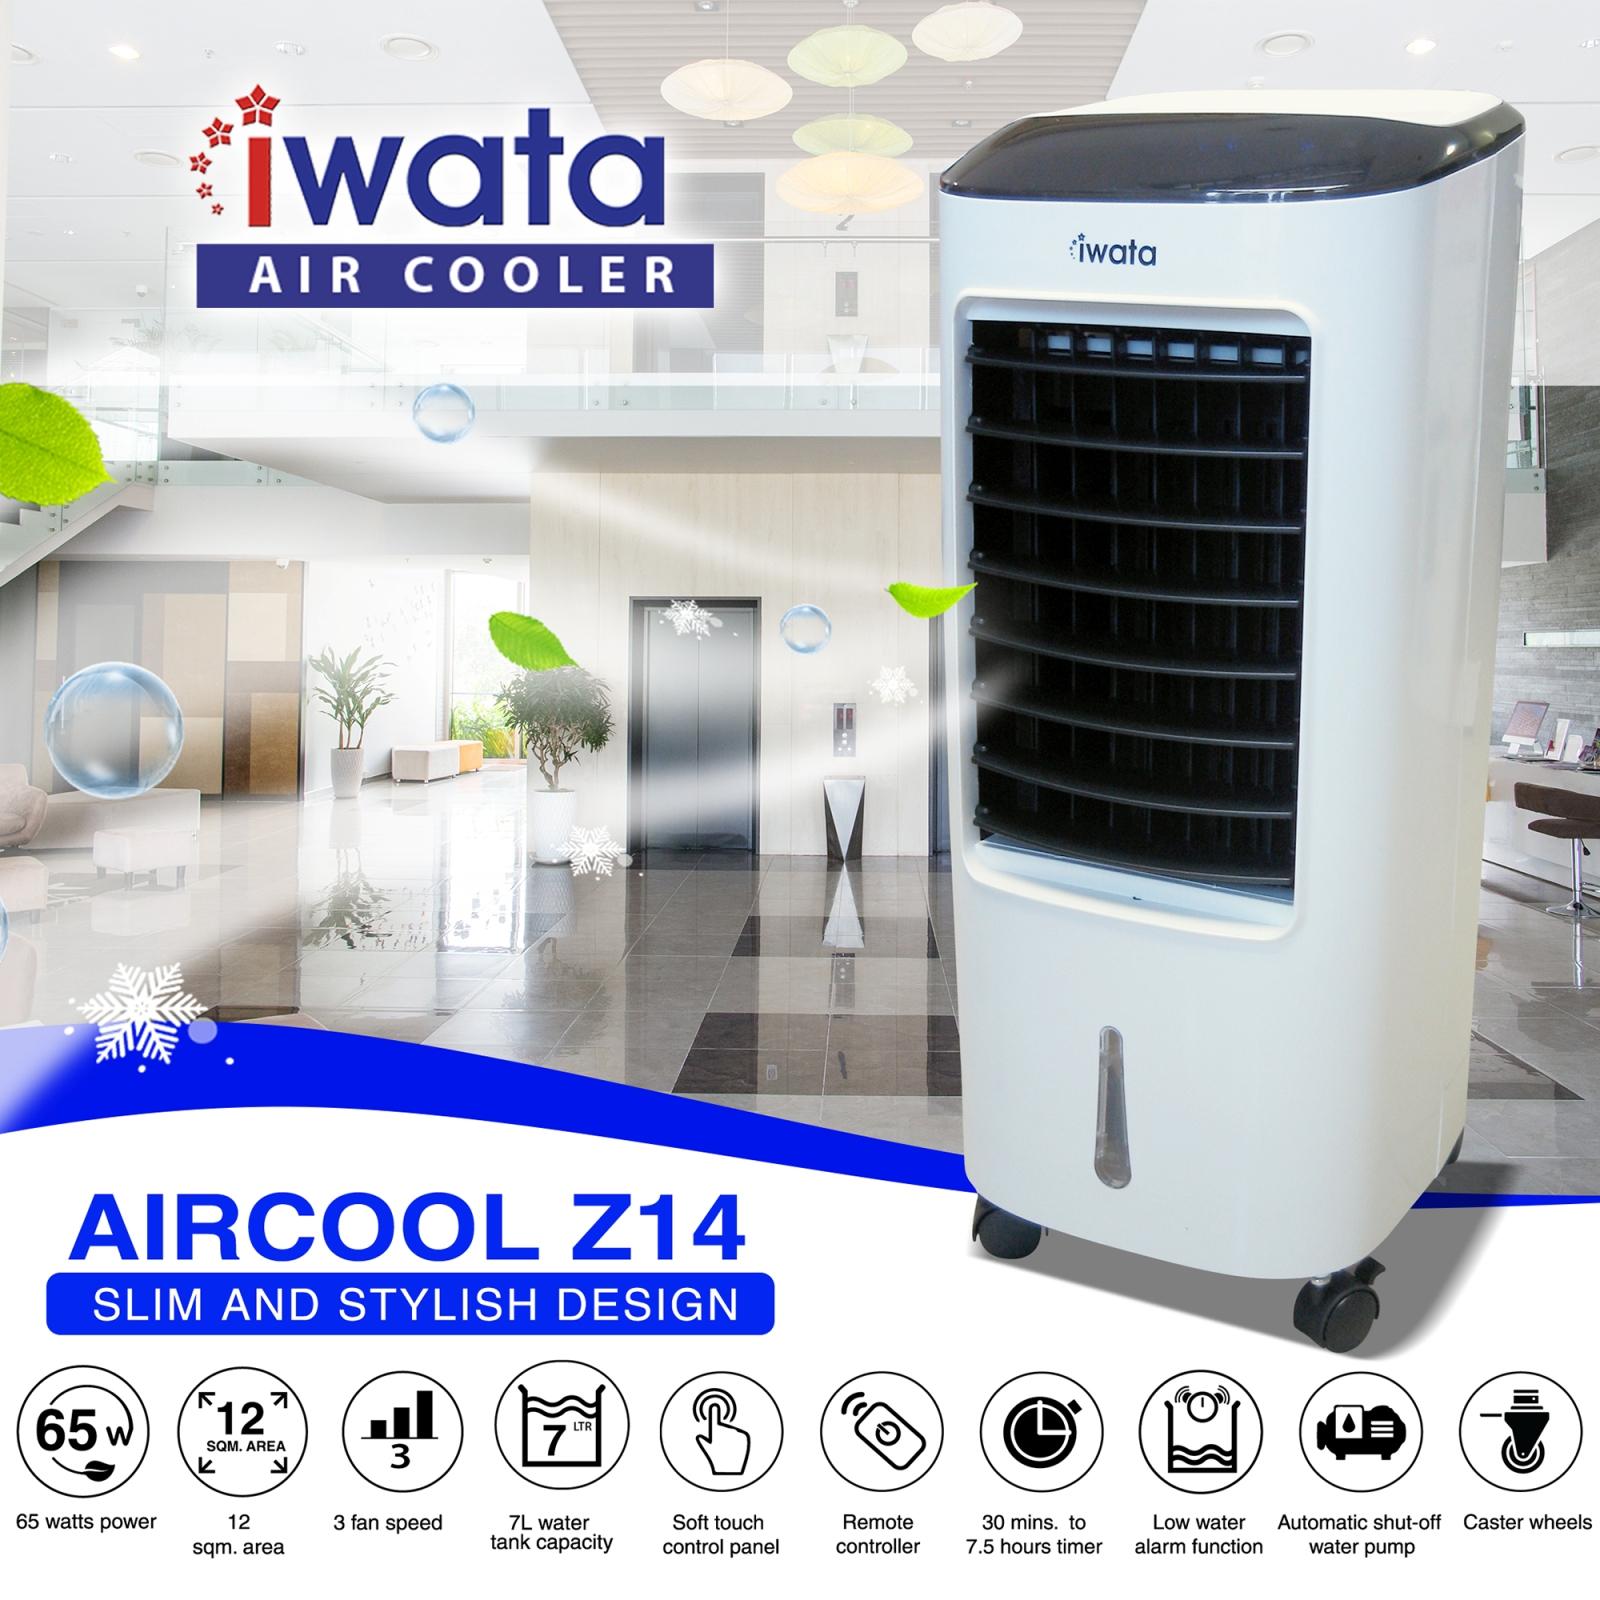 Iwata Aircool Z14 Air Cooler: Buy sell 